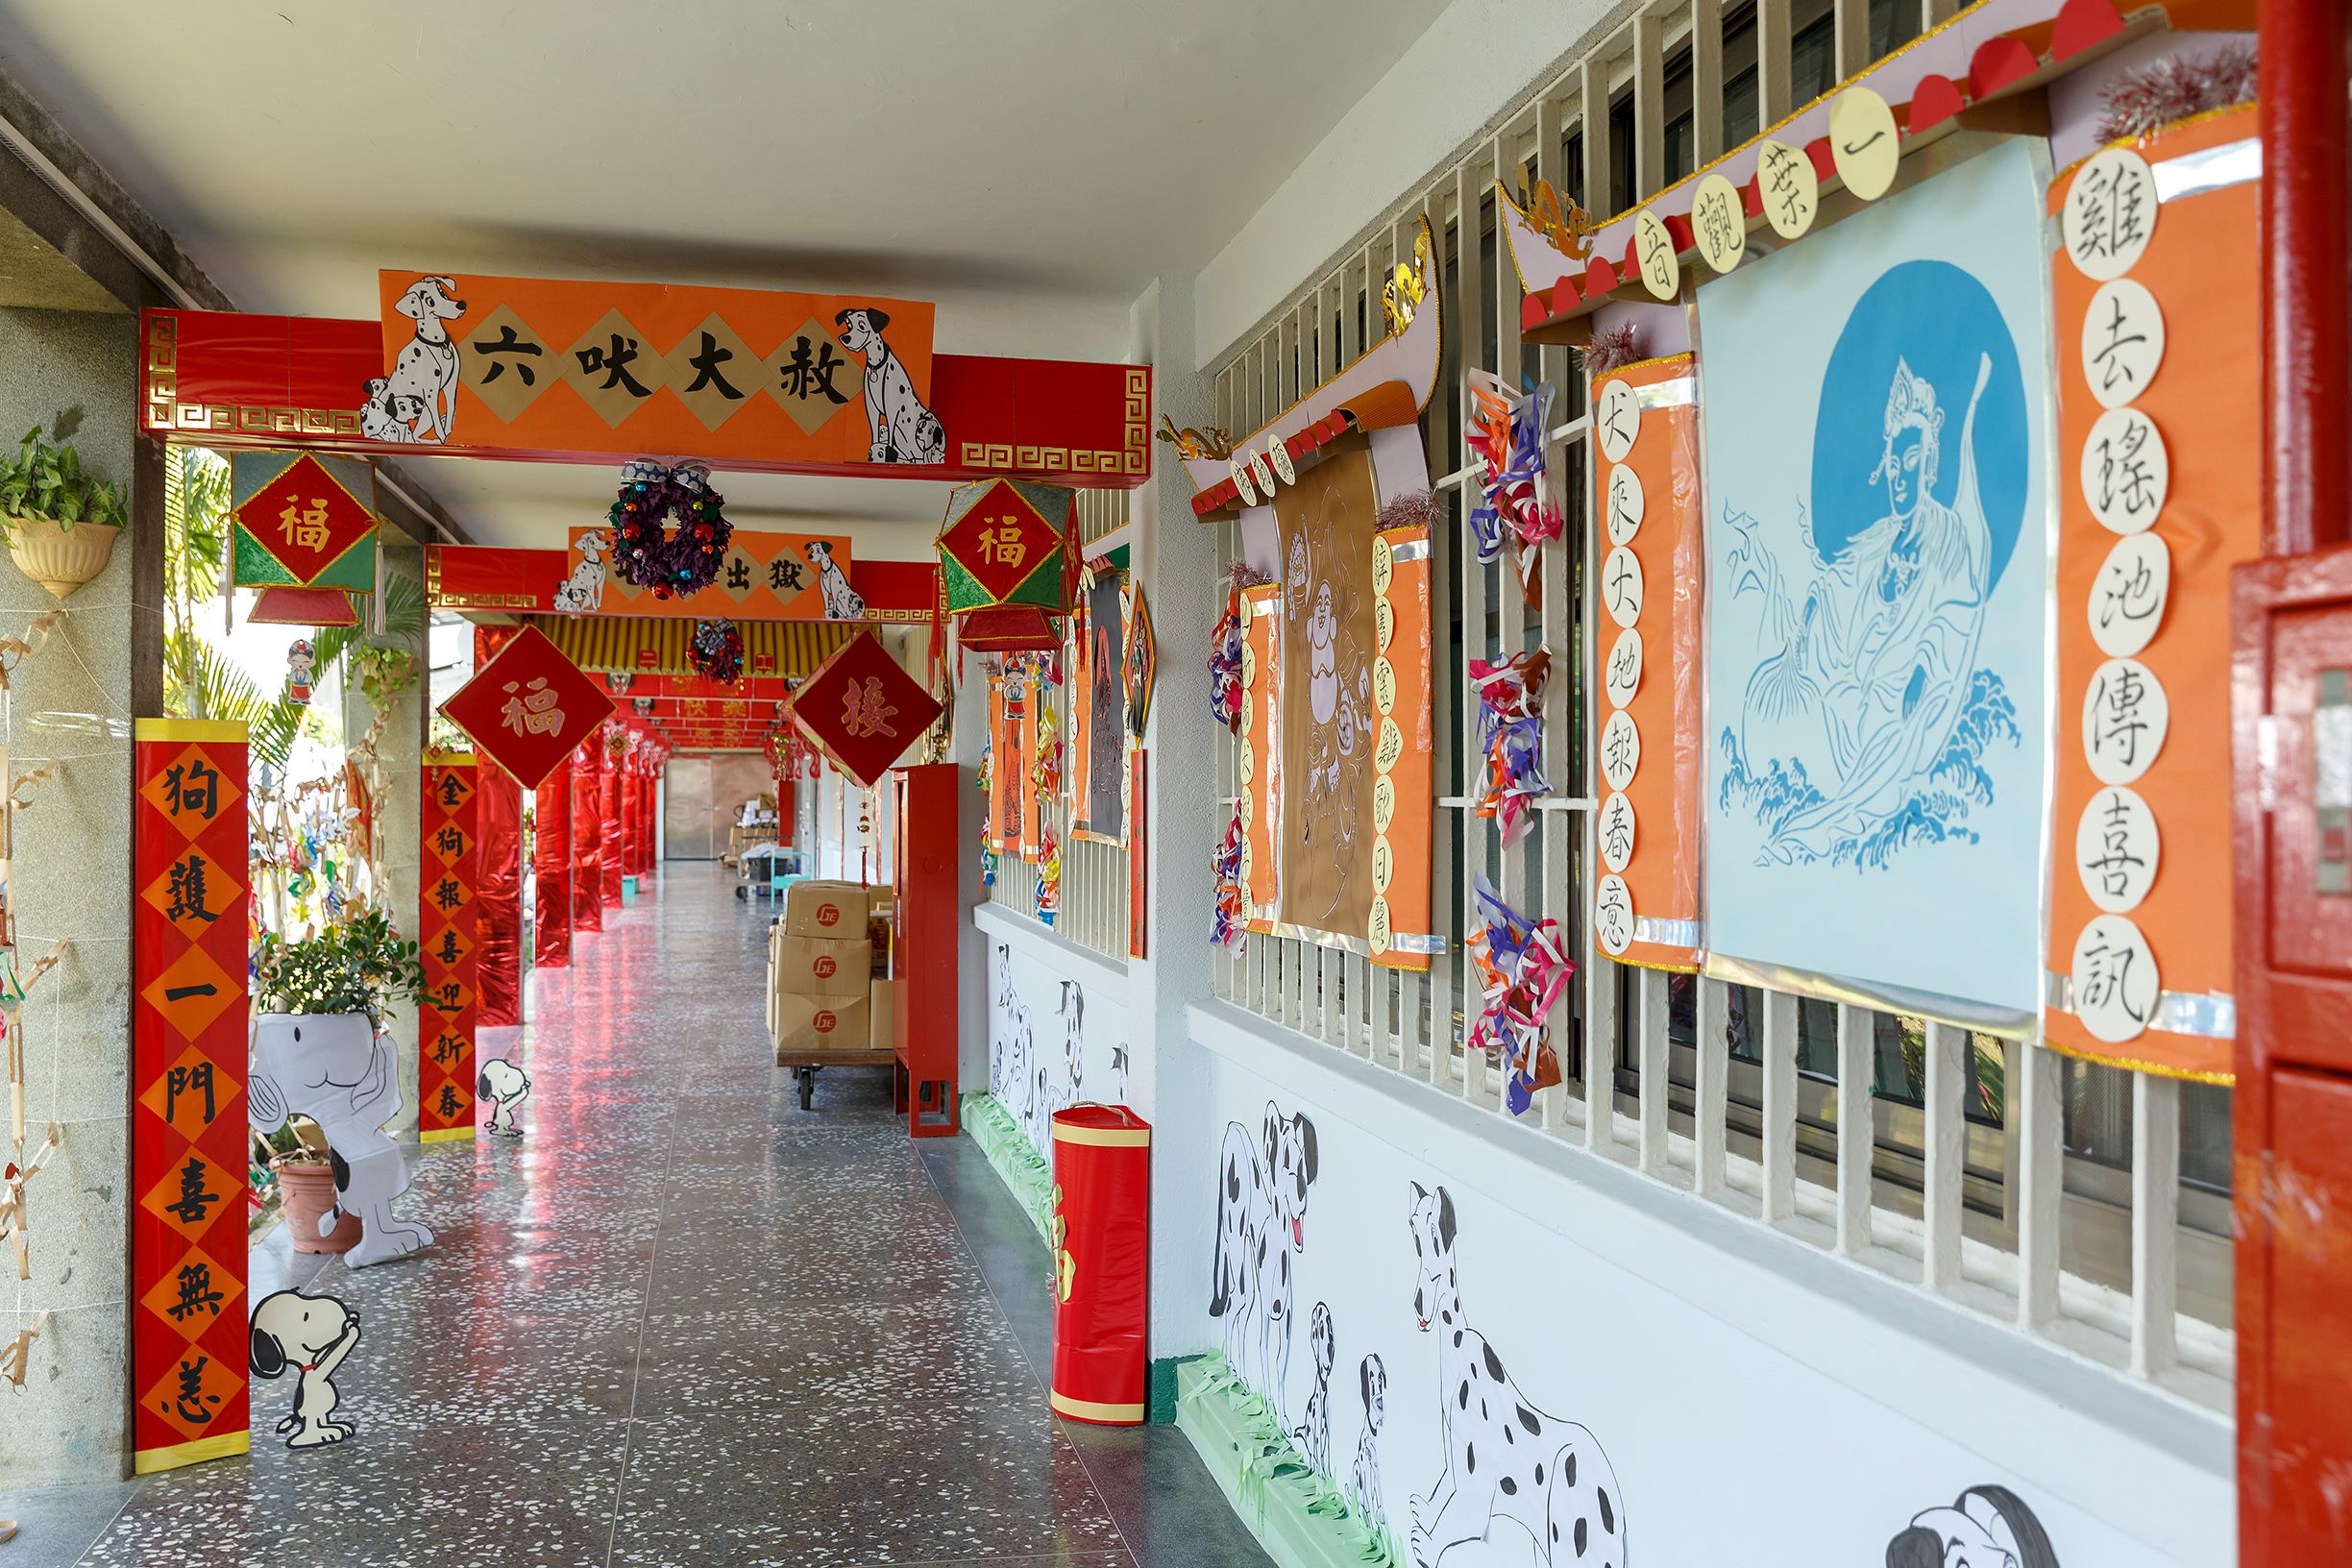 臺北監獄受刑人在春節期間以紙藝作品布置工場